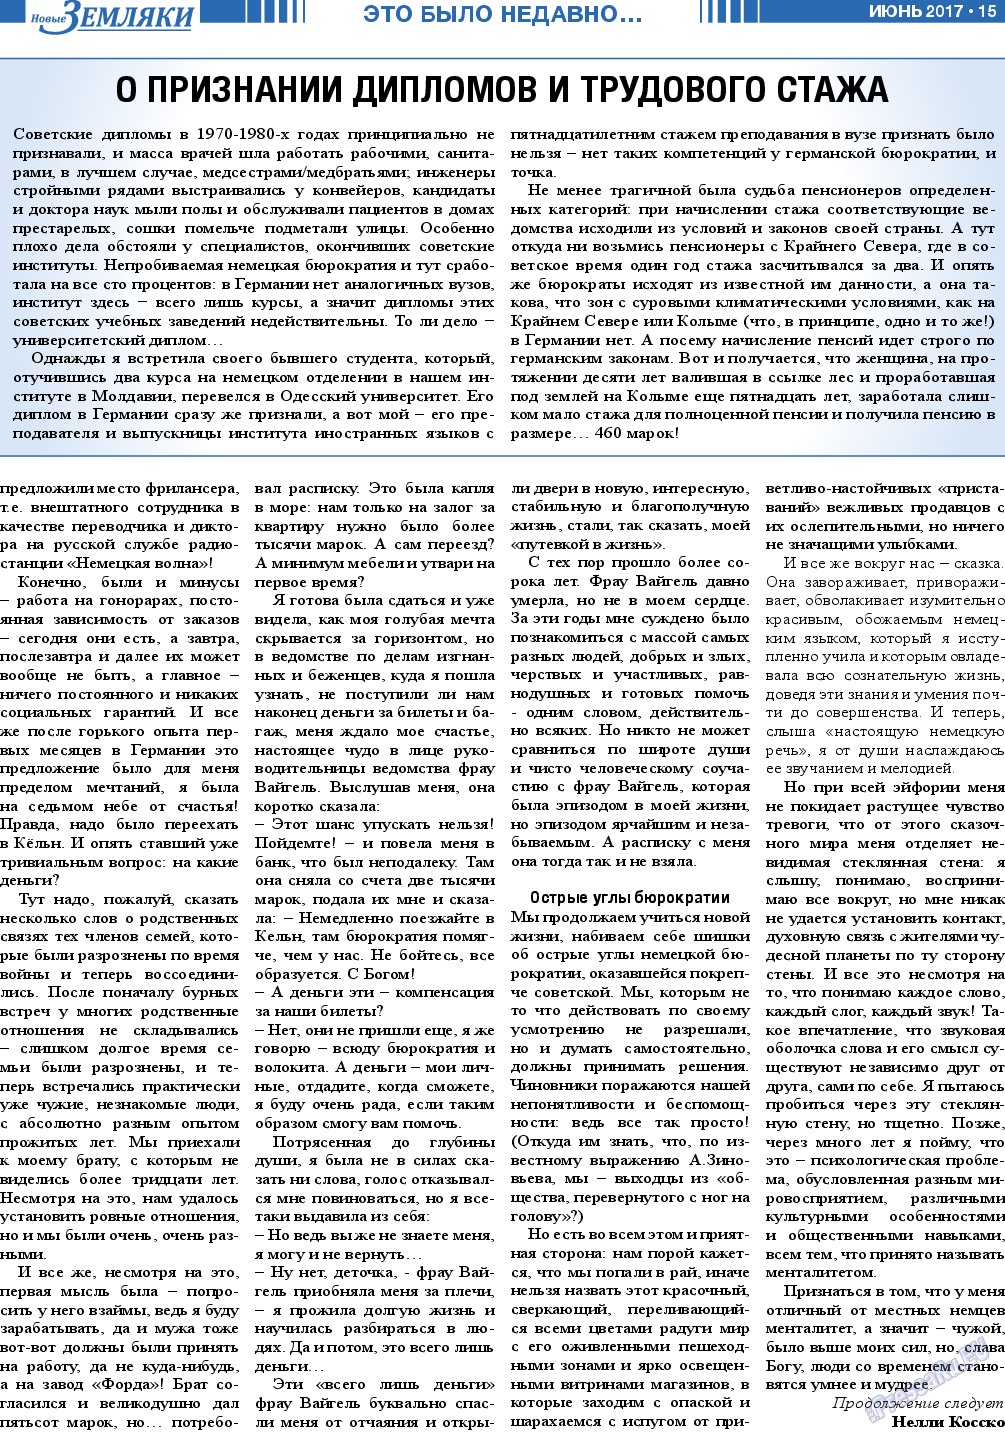 Новые Земляки, газета. 2017 №6 стр.15